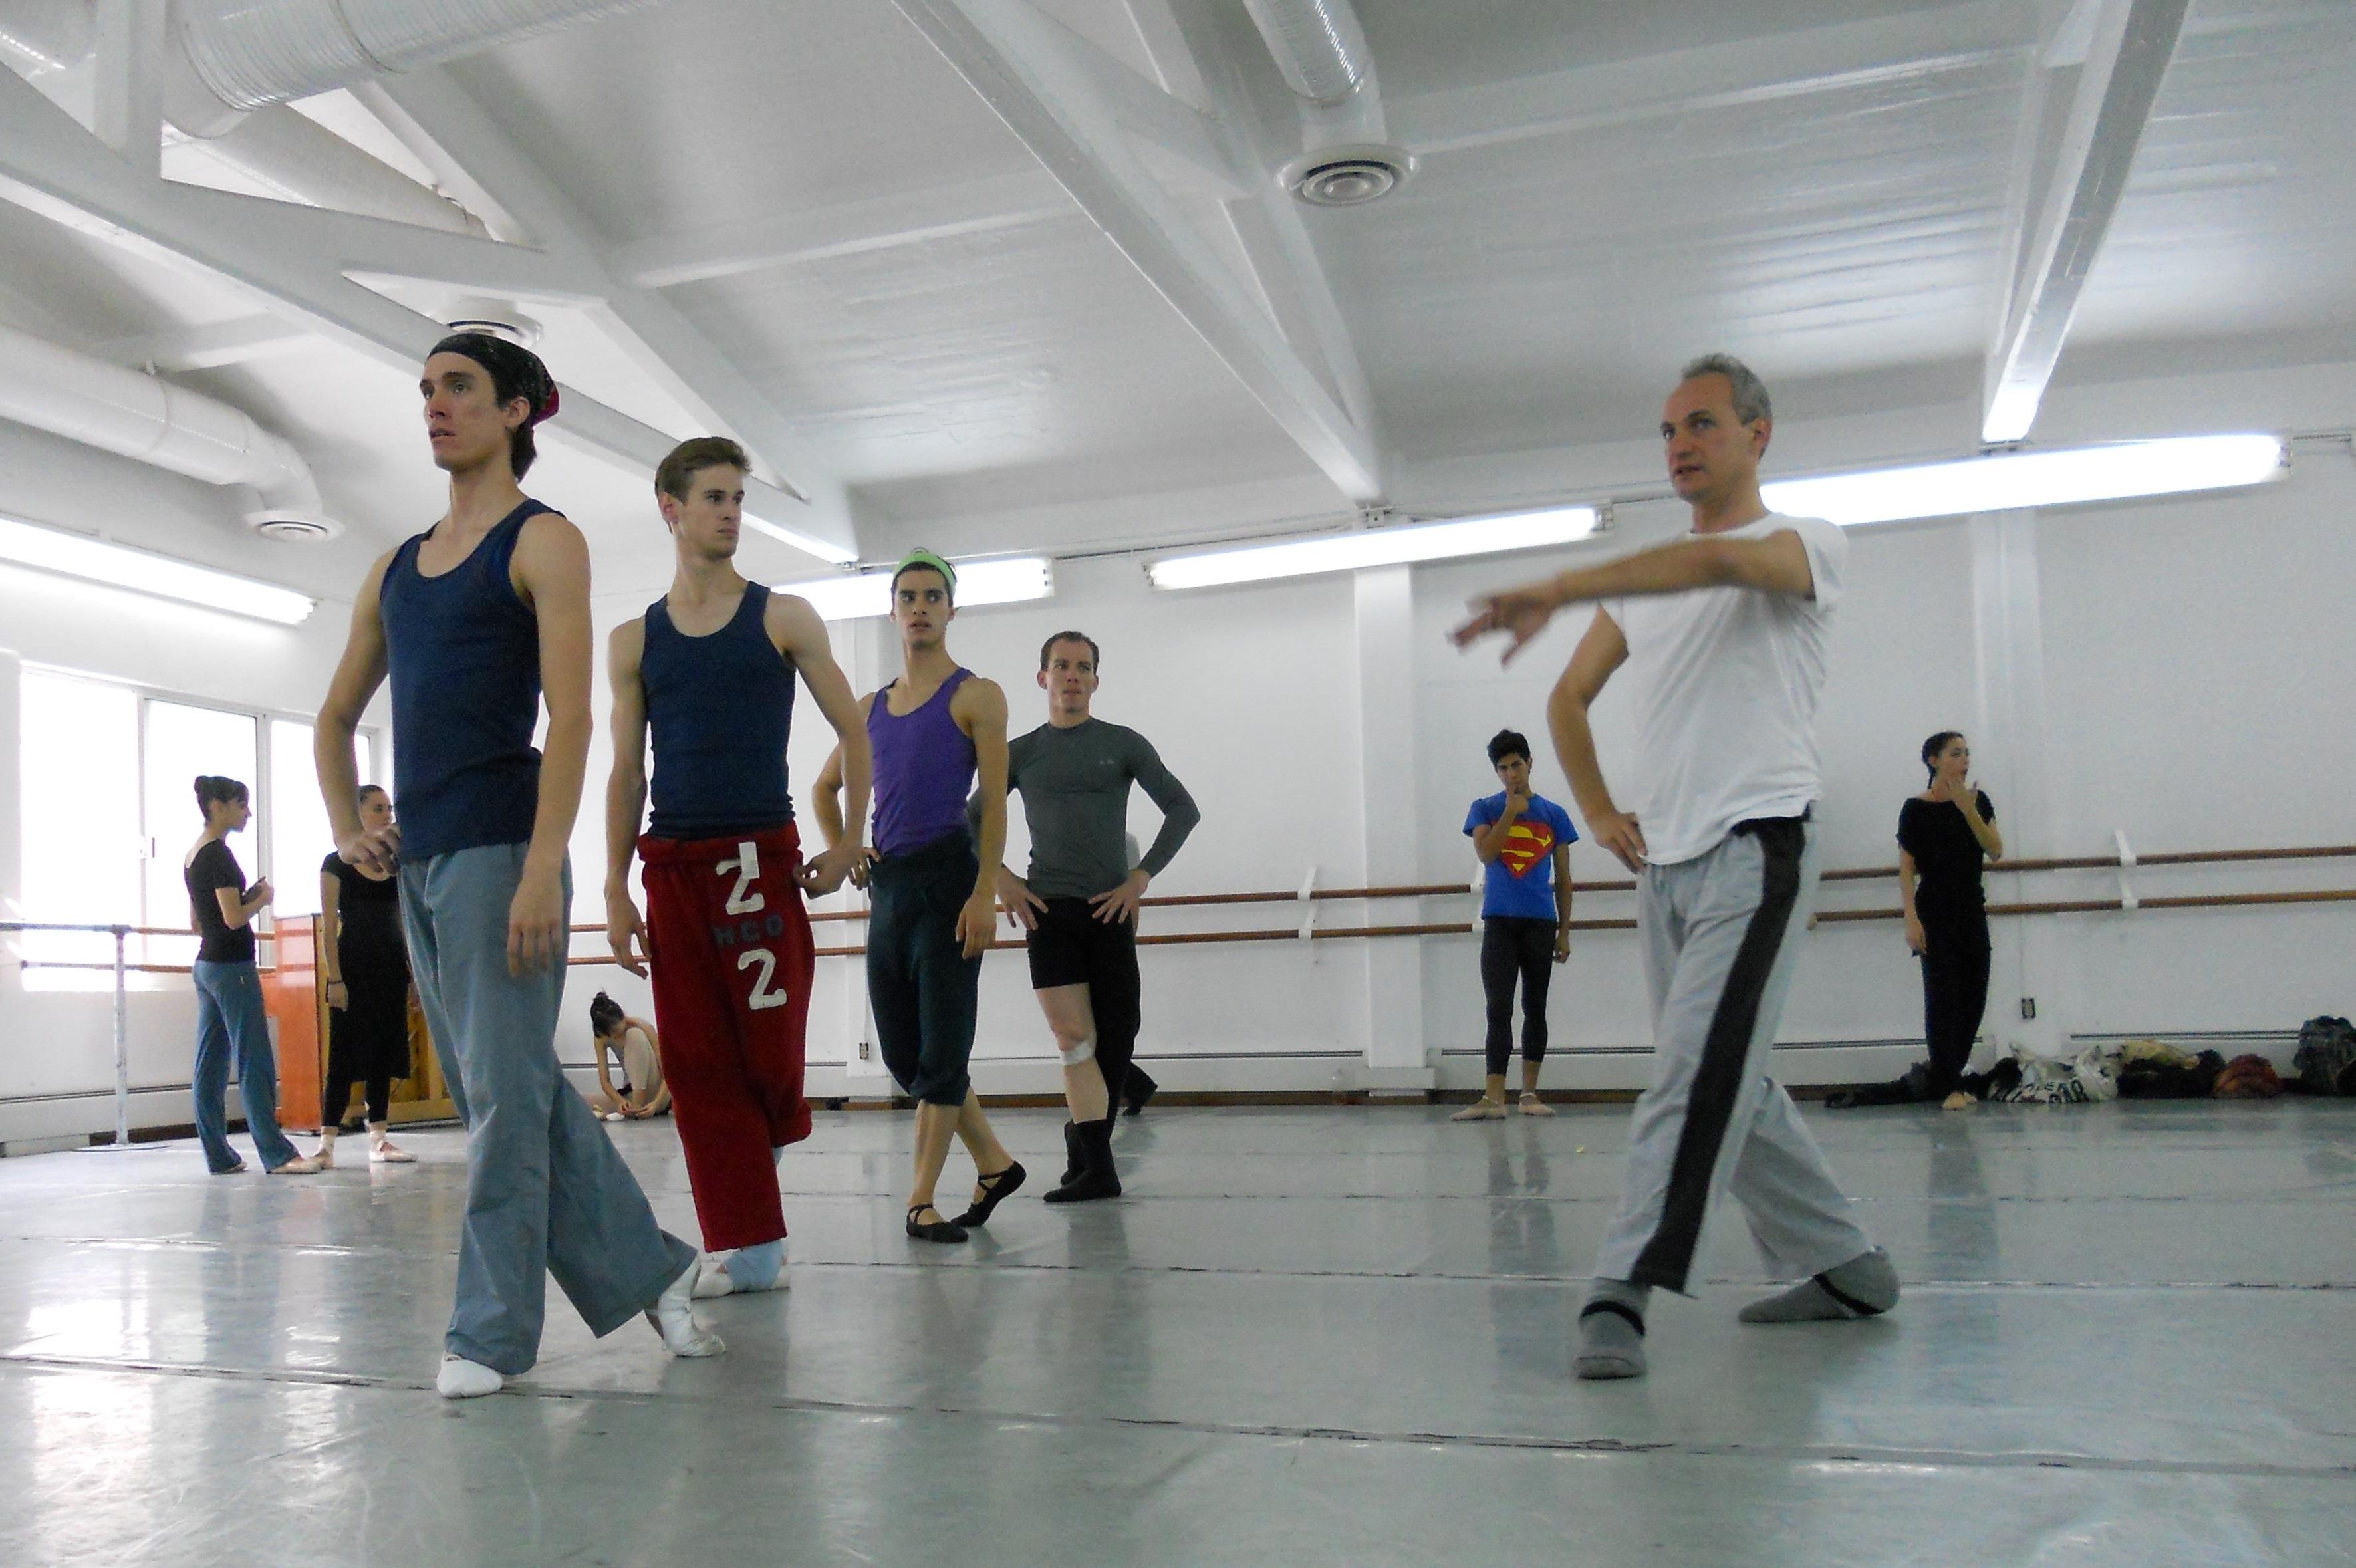 Експериментална лаборатория ХЕЛИОС  събира хореографи в София